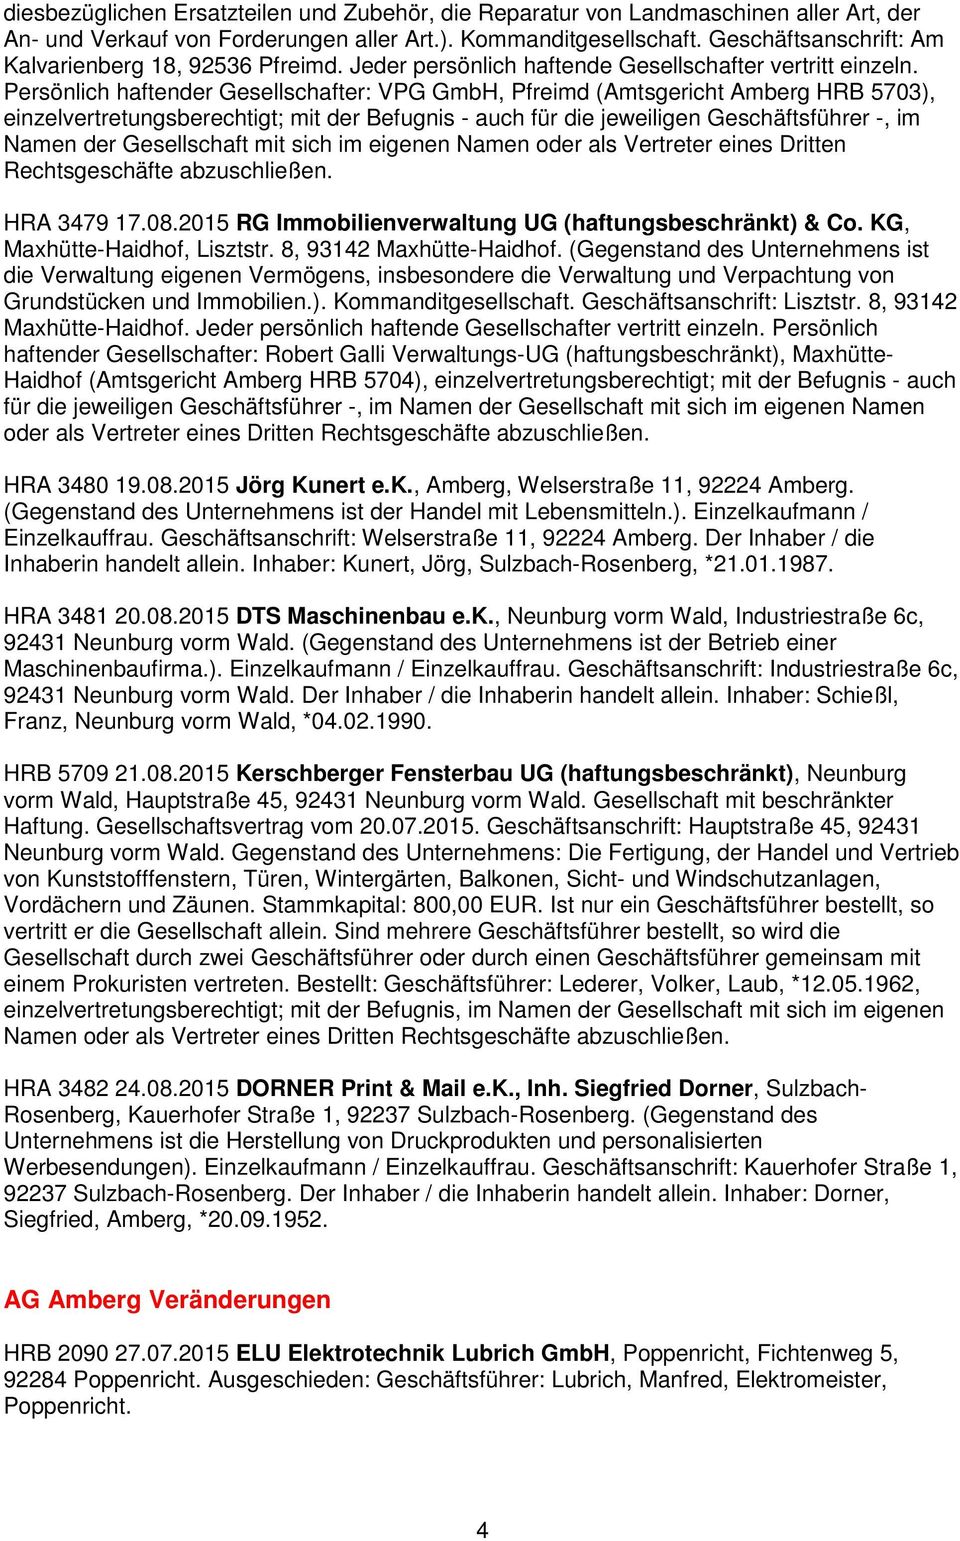 Persönlich haftender Gesellschafter: VPG GmbH, Pfreimd (Amtsgericht Amberg HRB 5703), einzelvertretungsberechtigt; mit der Befugnis - auch für die jeweiligen Geschäftsführer -, im Namen der